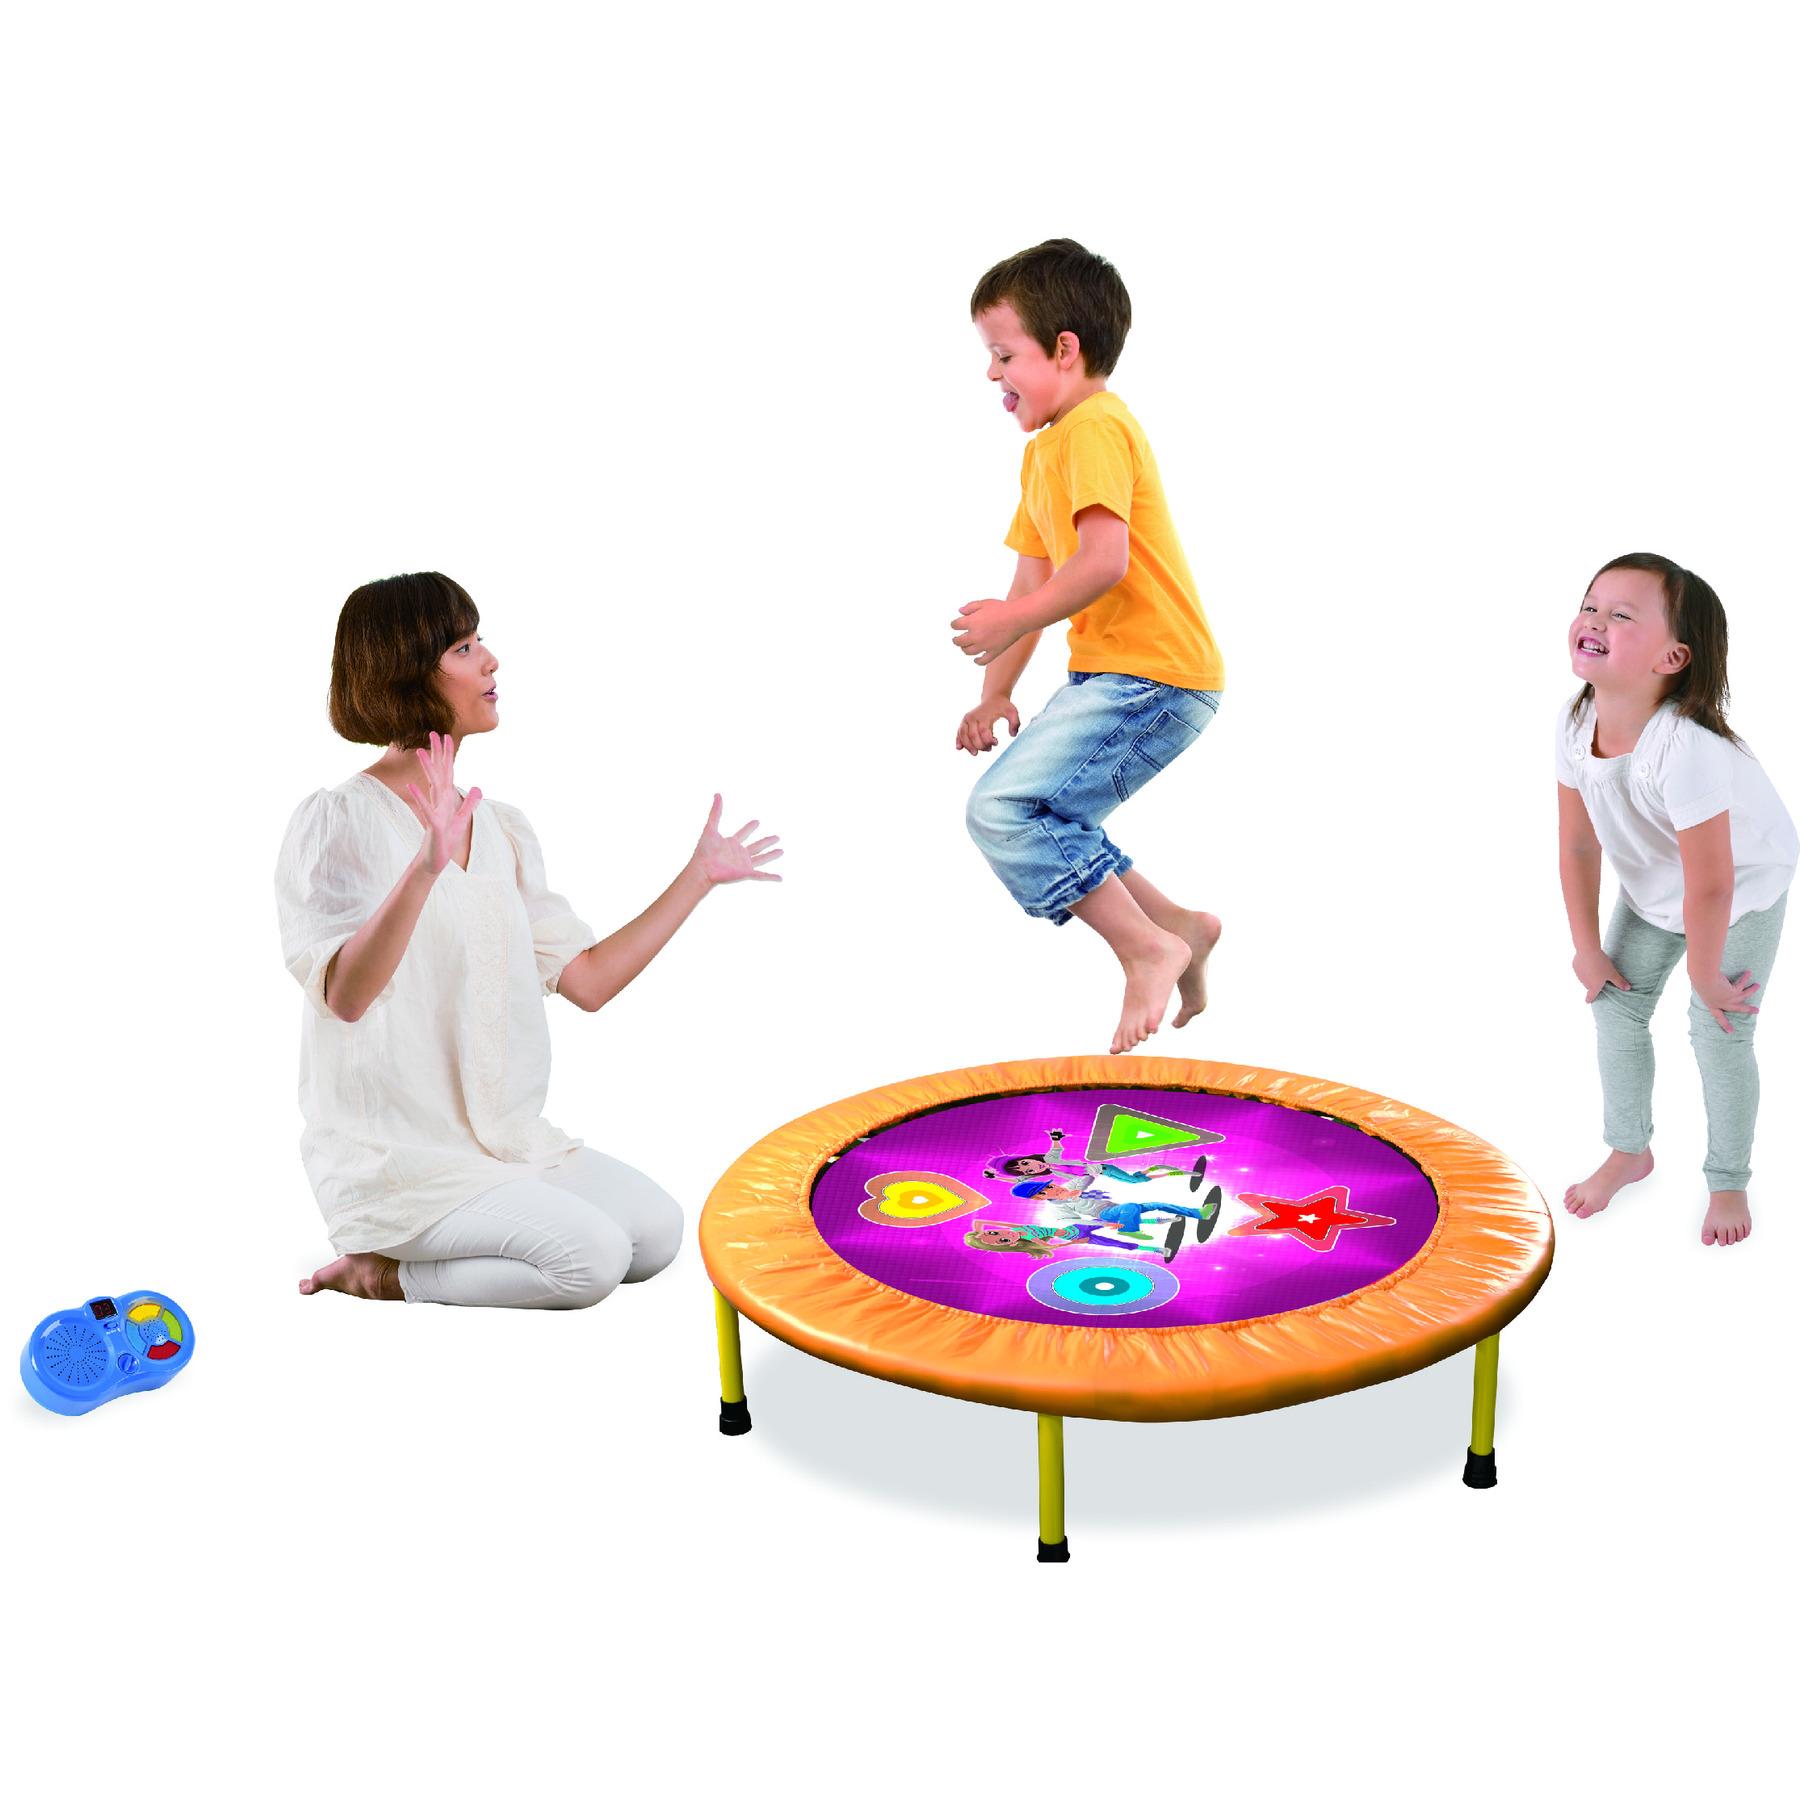 Изображение товара: Батут Интерактивная: мини батут Танцы розовый (заказ детский батут для прыжков и Танцы-игровых ковриков)